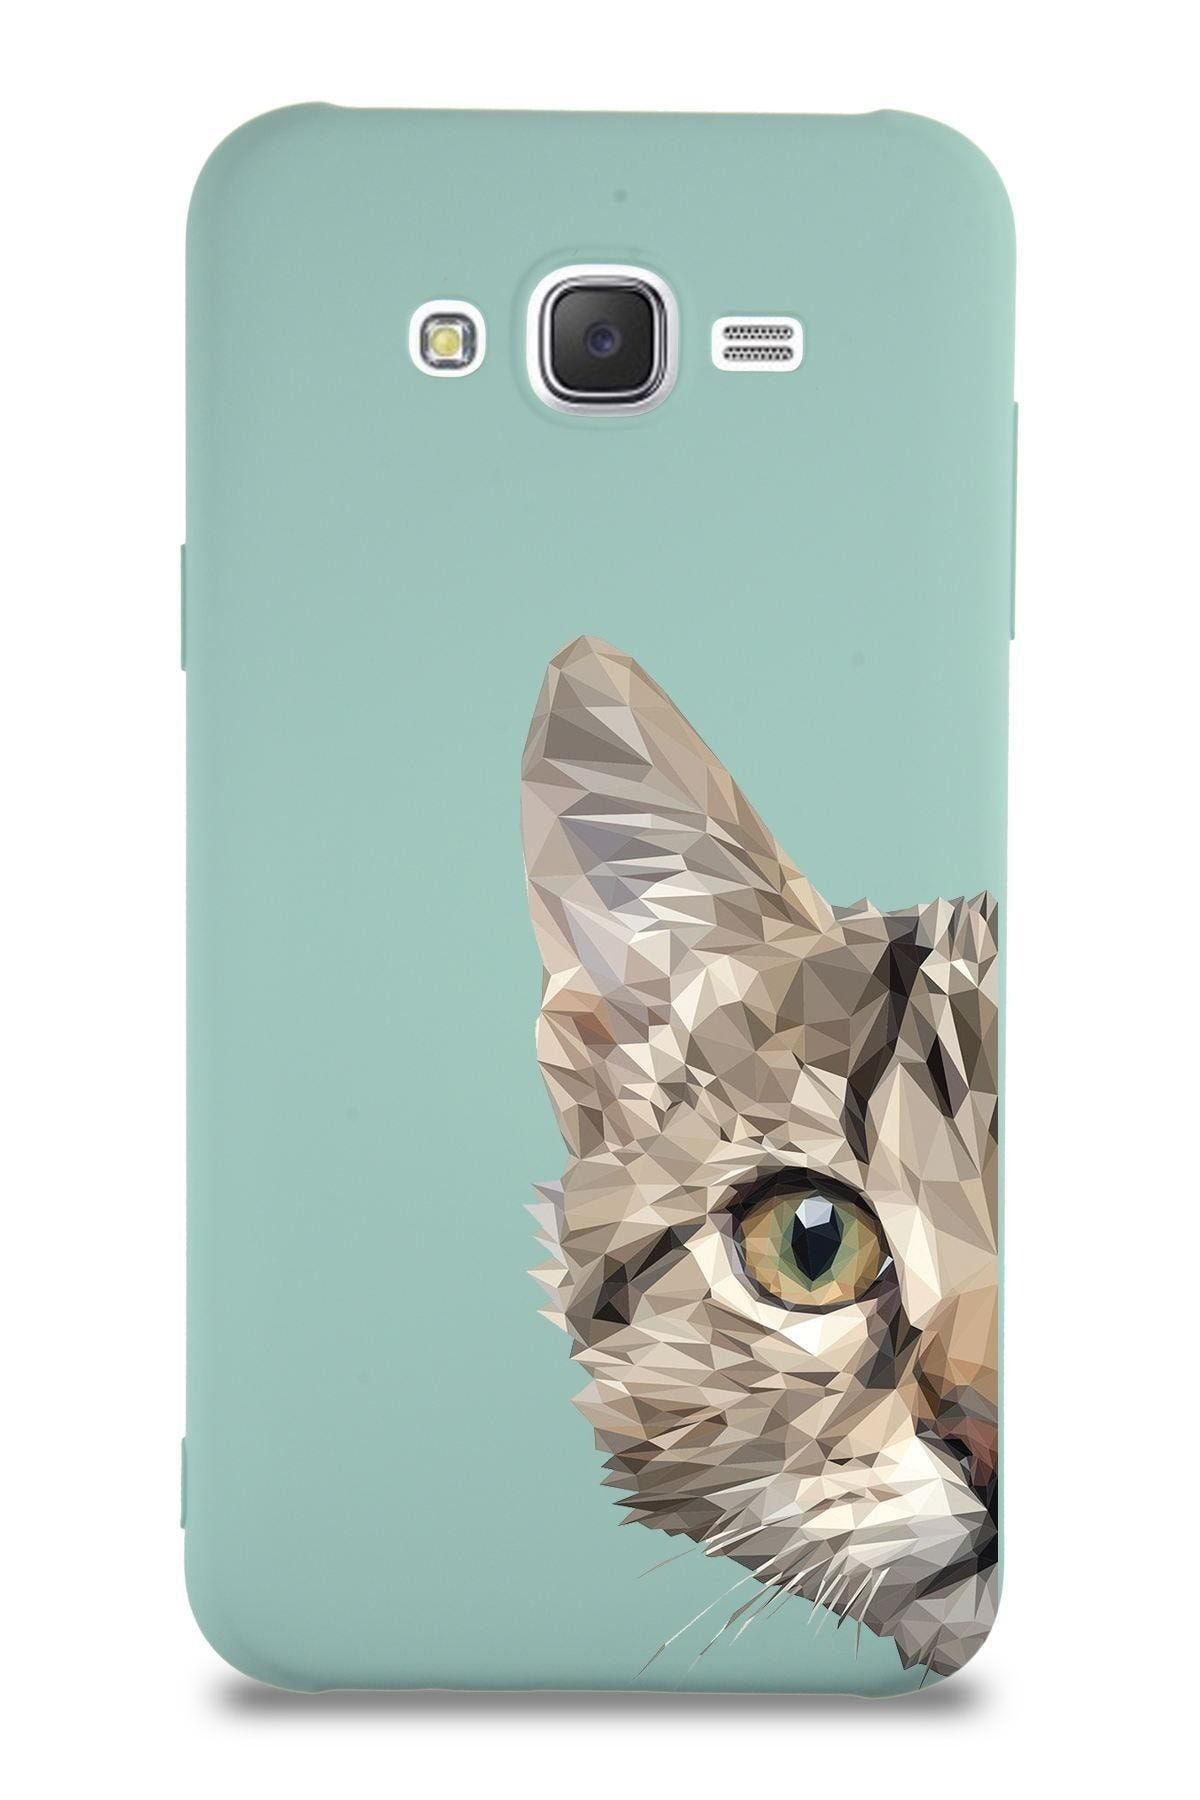 PrintiFy Samsung Galaxy J7 Uyumlu Lansman Kılıf Catface Tasarımlı Içi Kadife Kapak-turkuaz